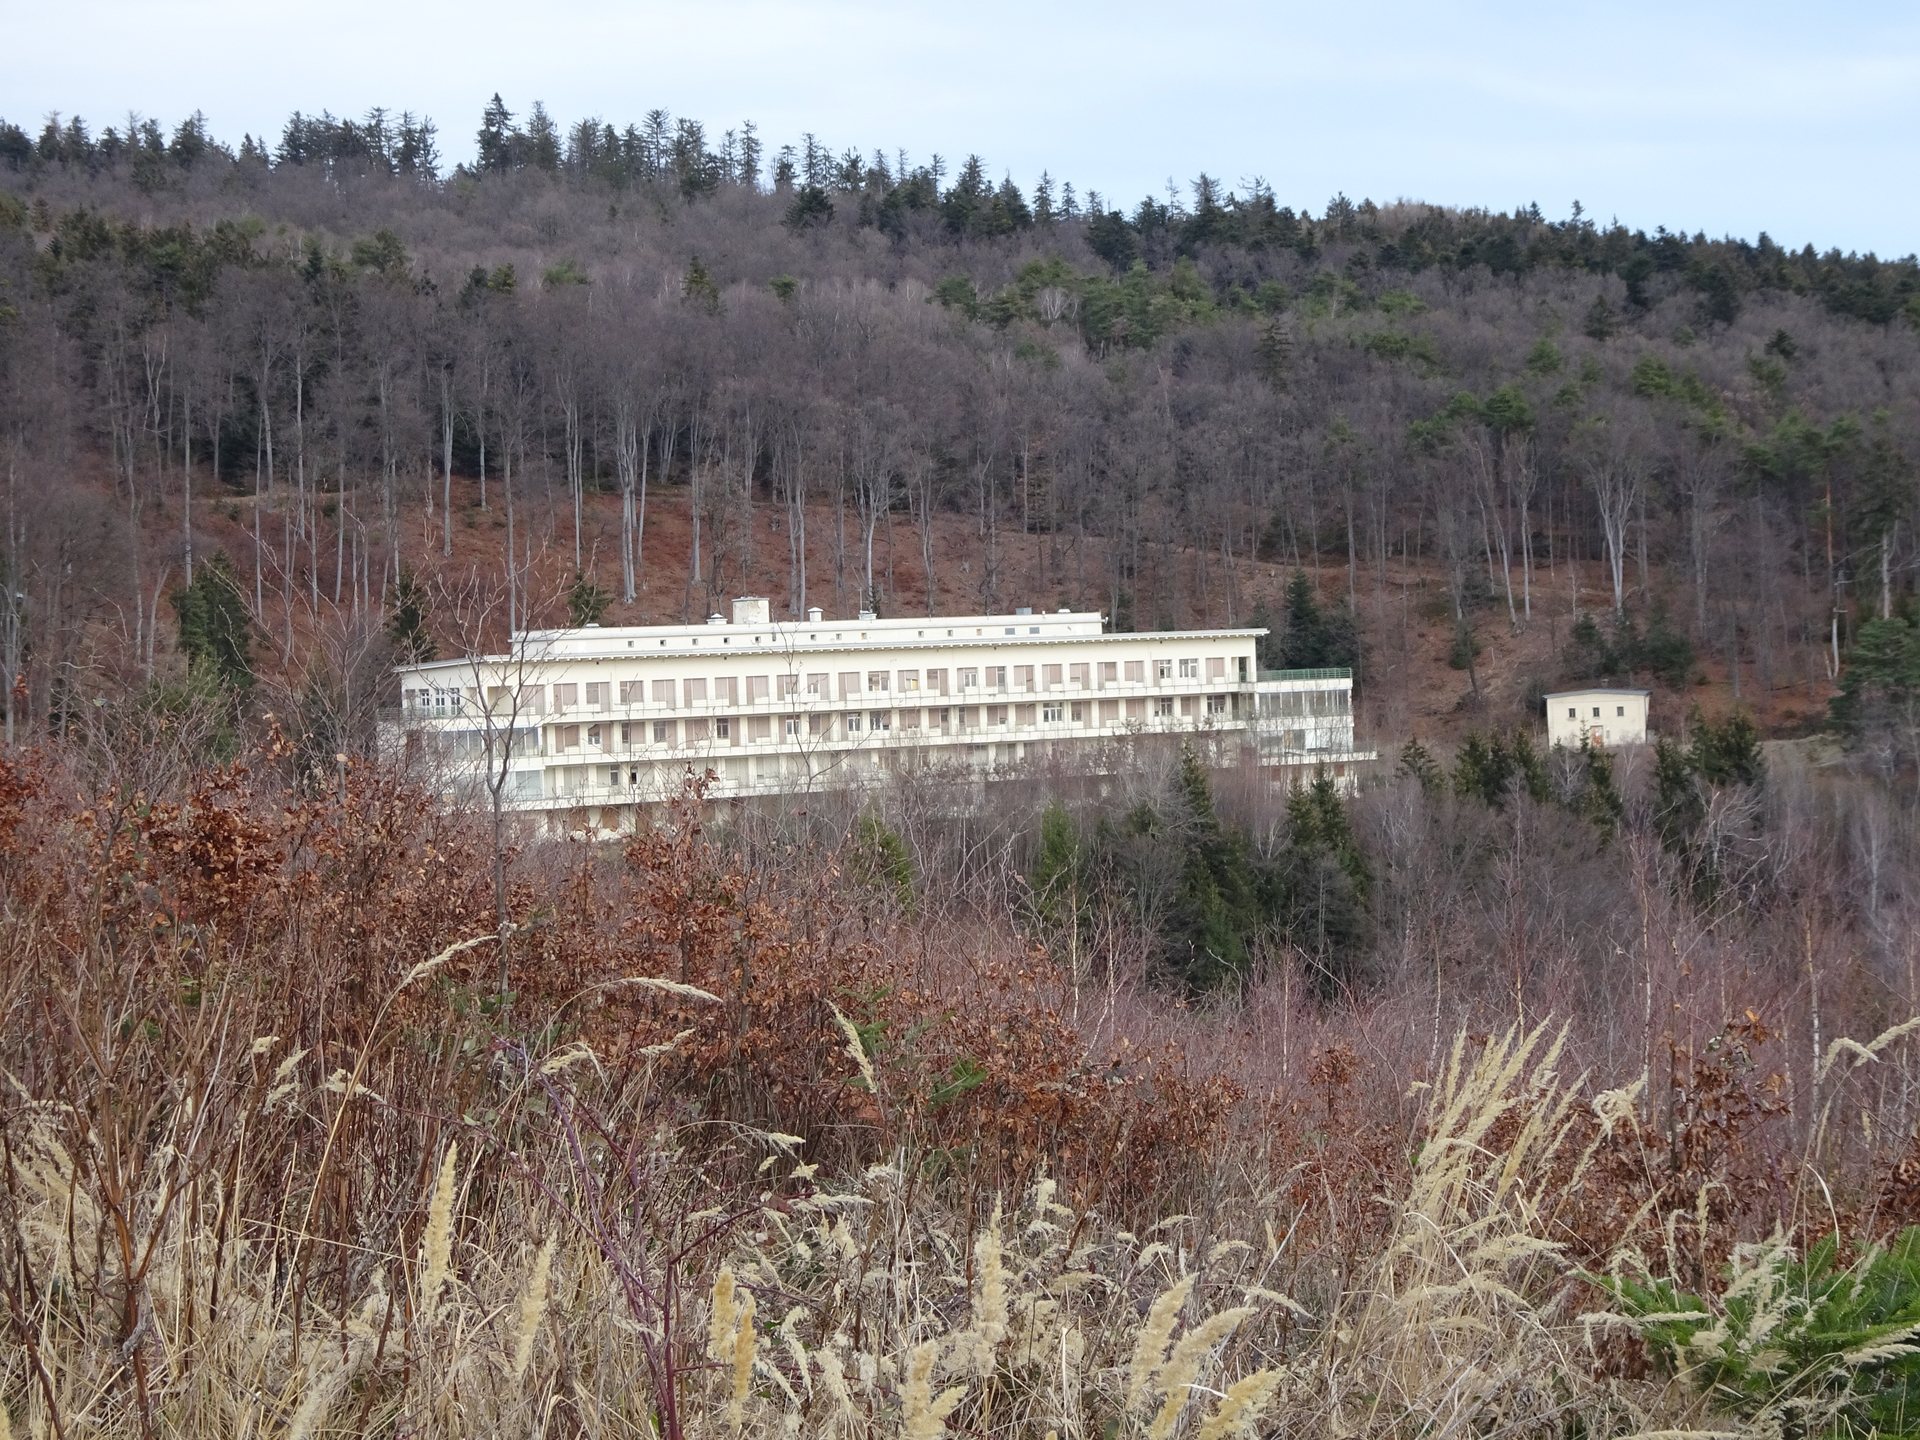 The former sanatorium